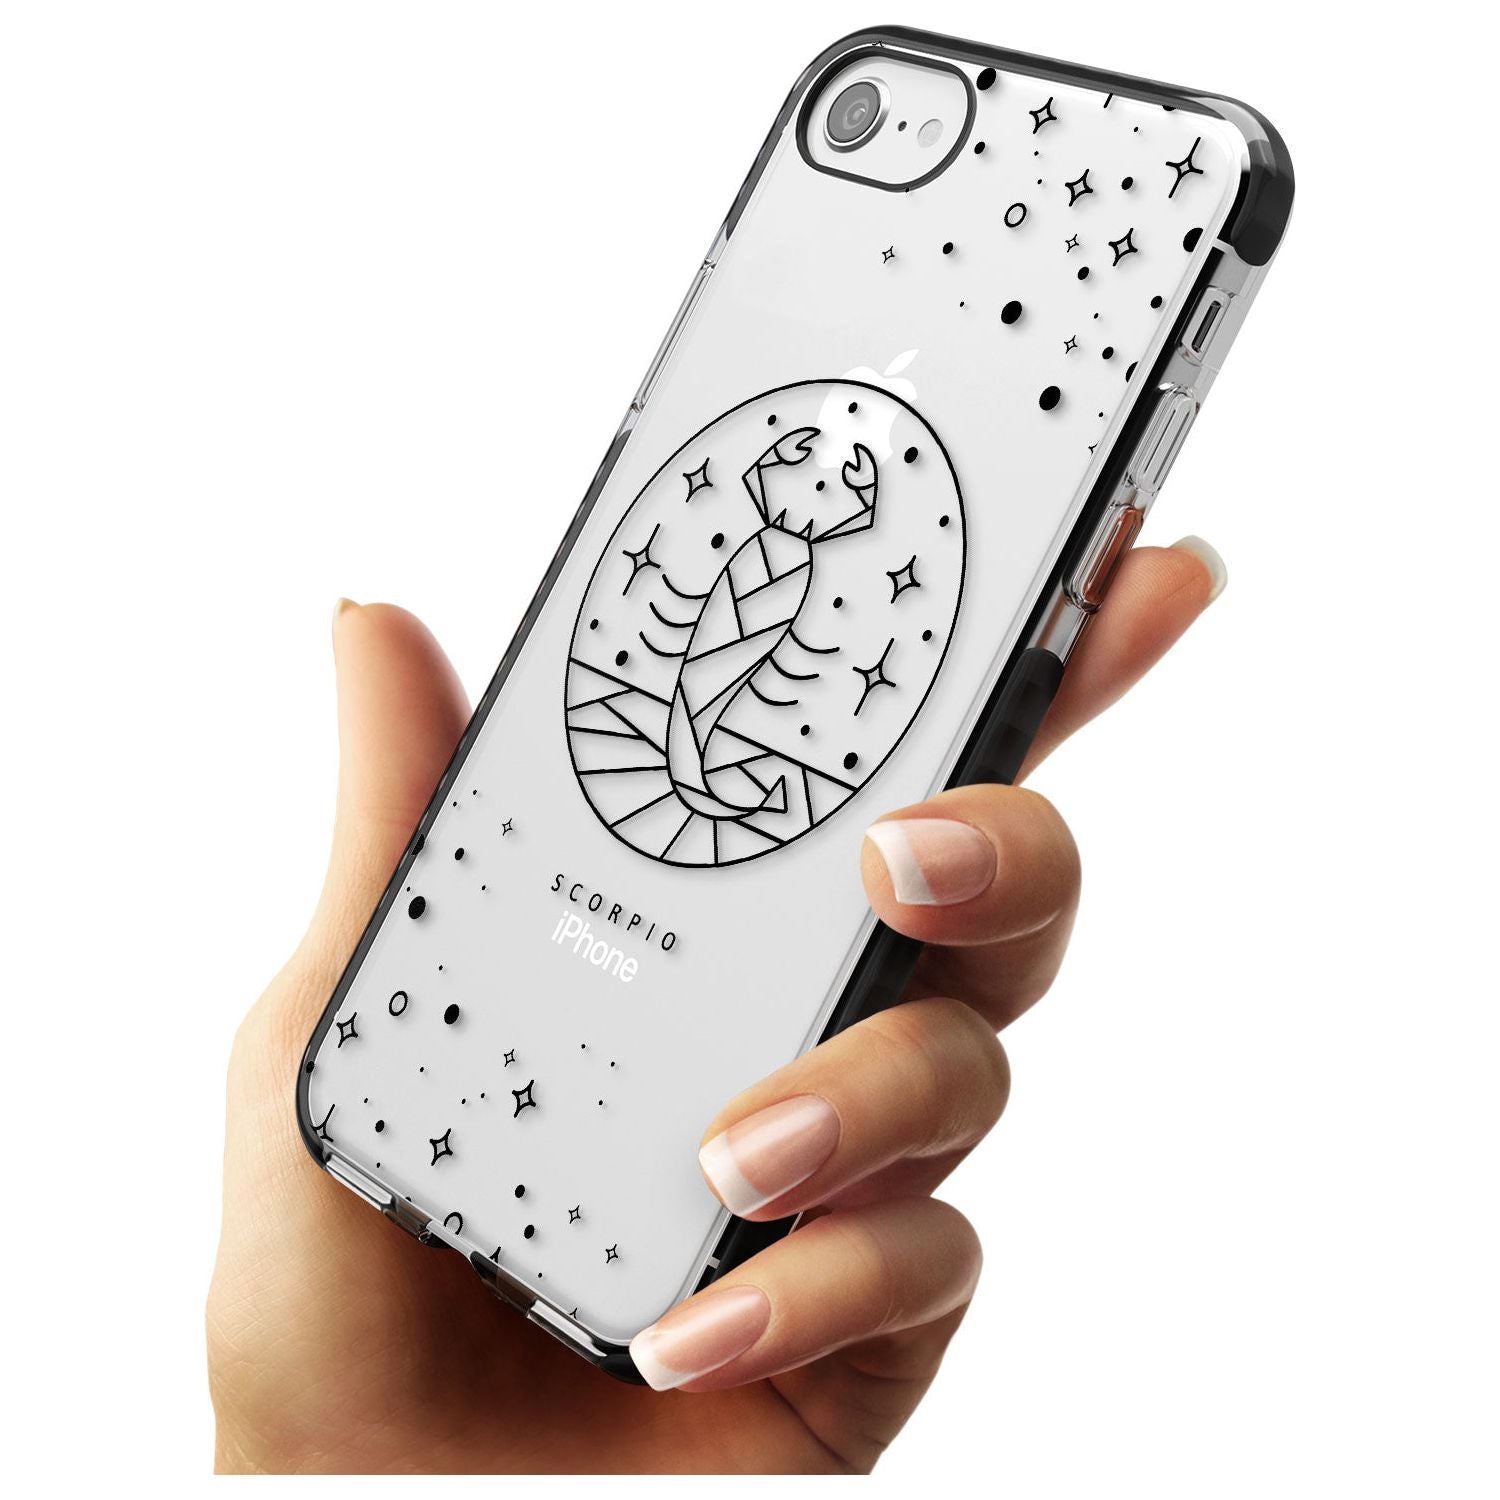 Scorpio Emblem - Transparent Design Black Impact Phone Case for iPhone SE 8 7 Plus